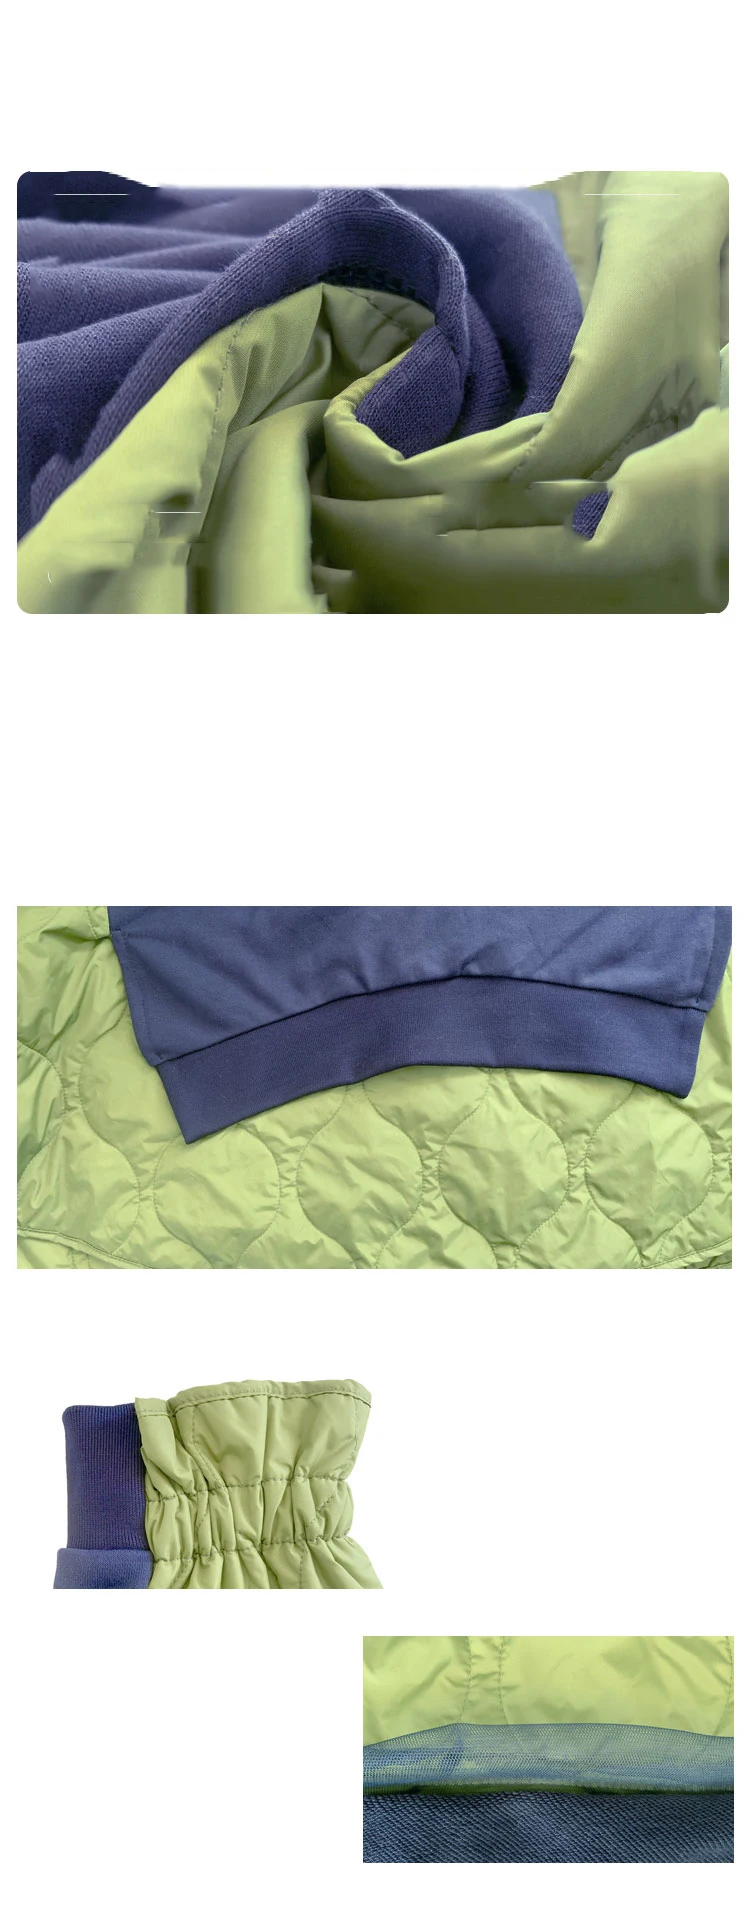 XITAO пэчворк хит цвет пуловер Толстовка женская зима Европейский Стиль Мода стиль Круглый вырез воротник Топ DMY1236